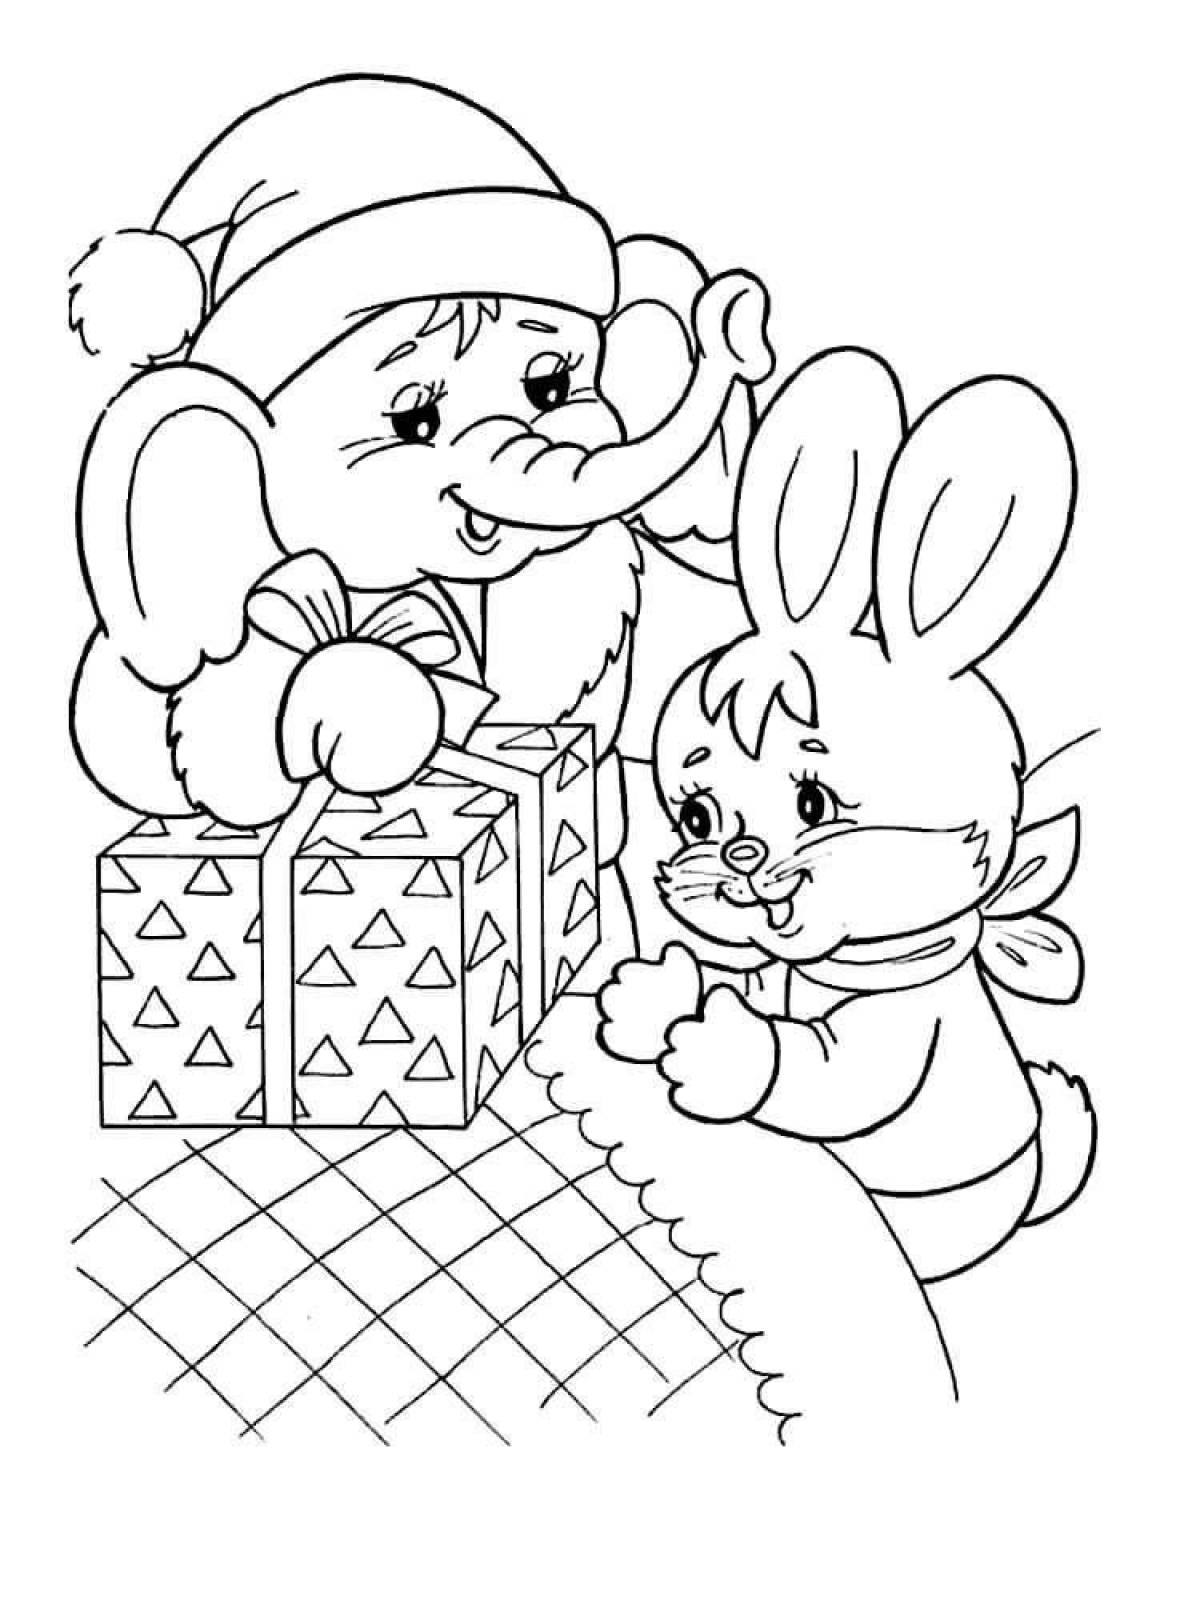 Fun coloring book christmas bunny